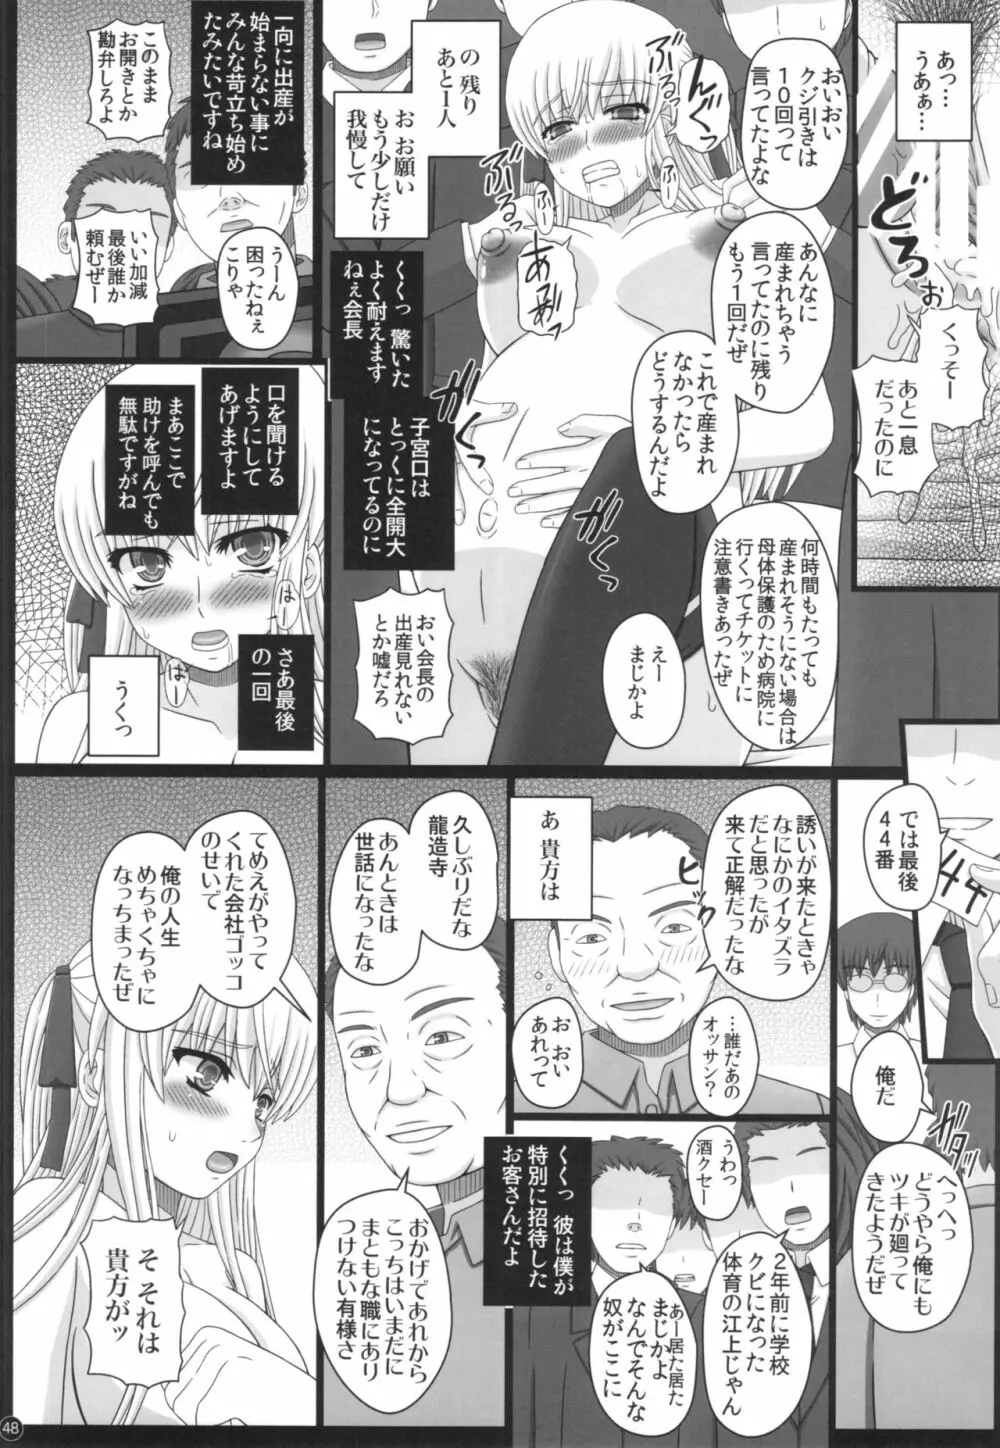 Katashibu 40-shuu 48ページ